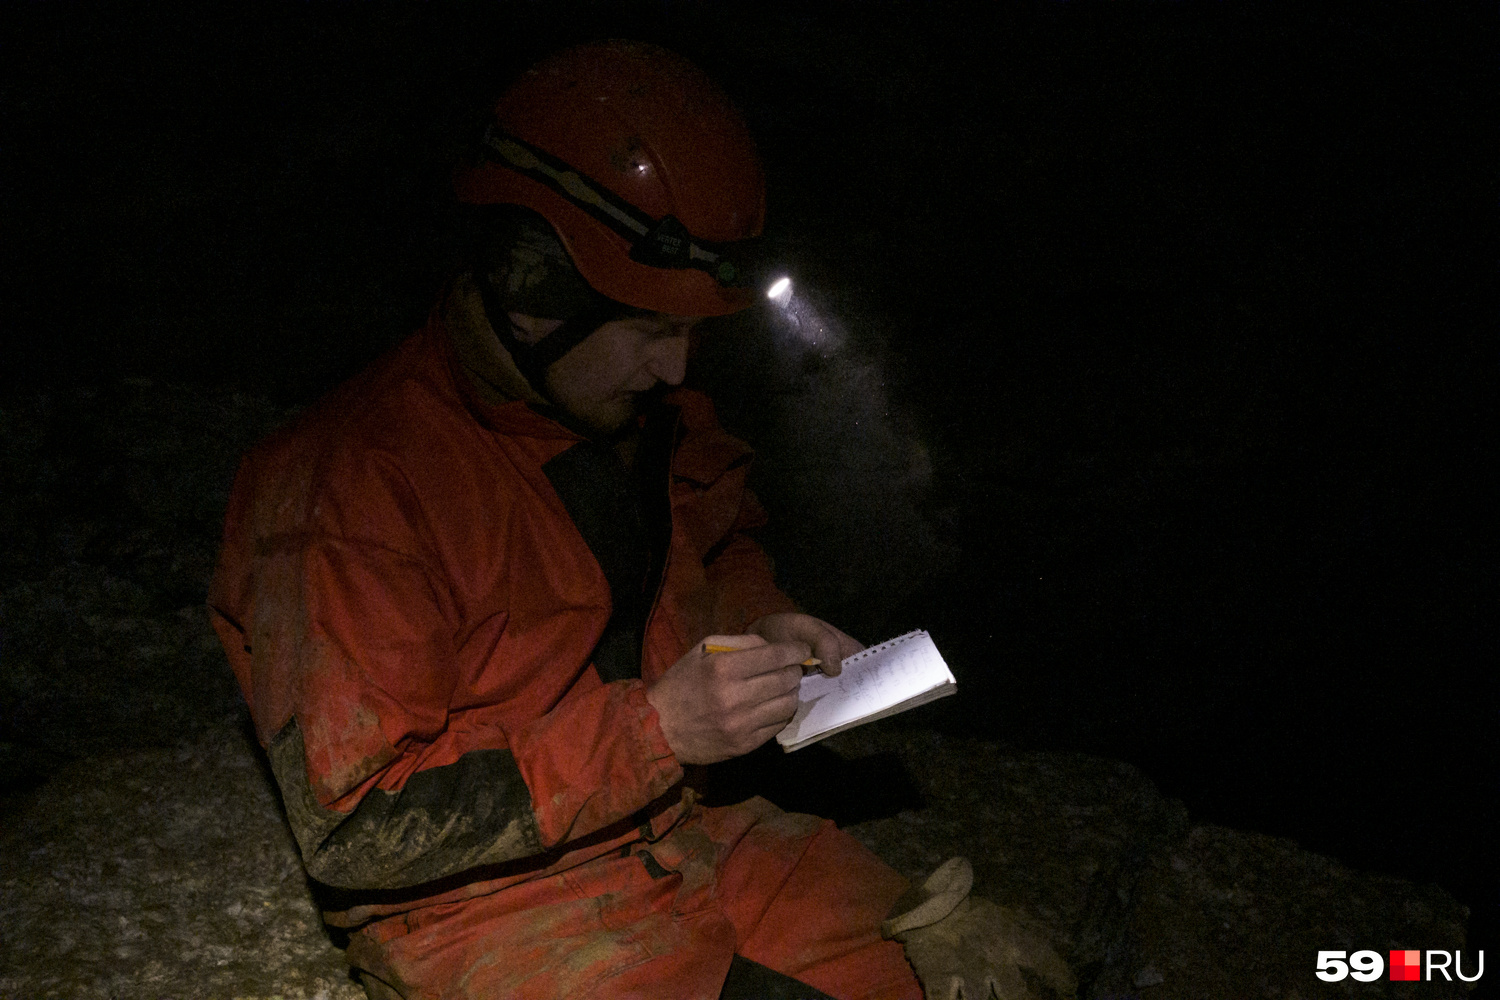 В гротах установлены термометры. При каждом походе в заповедную часть Алексей записывает температуру в разных частях пещеры. Это один из показателей, по которым ученые определяют состояние пещеры